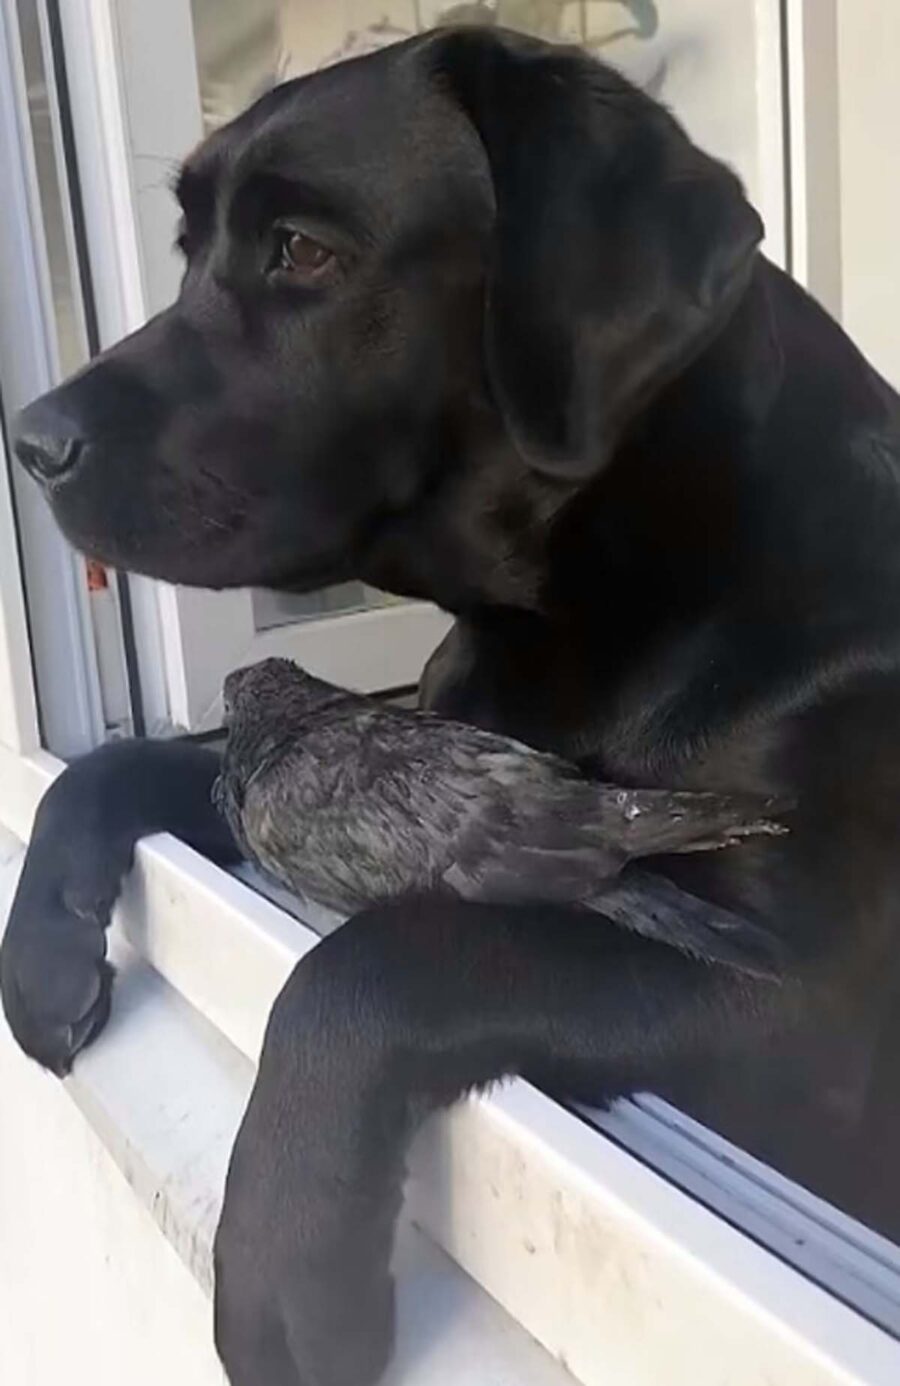 piccione posato su cane nero